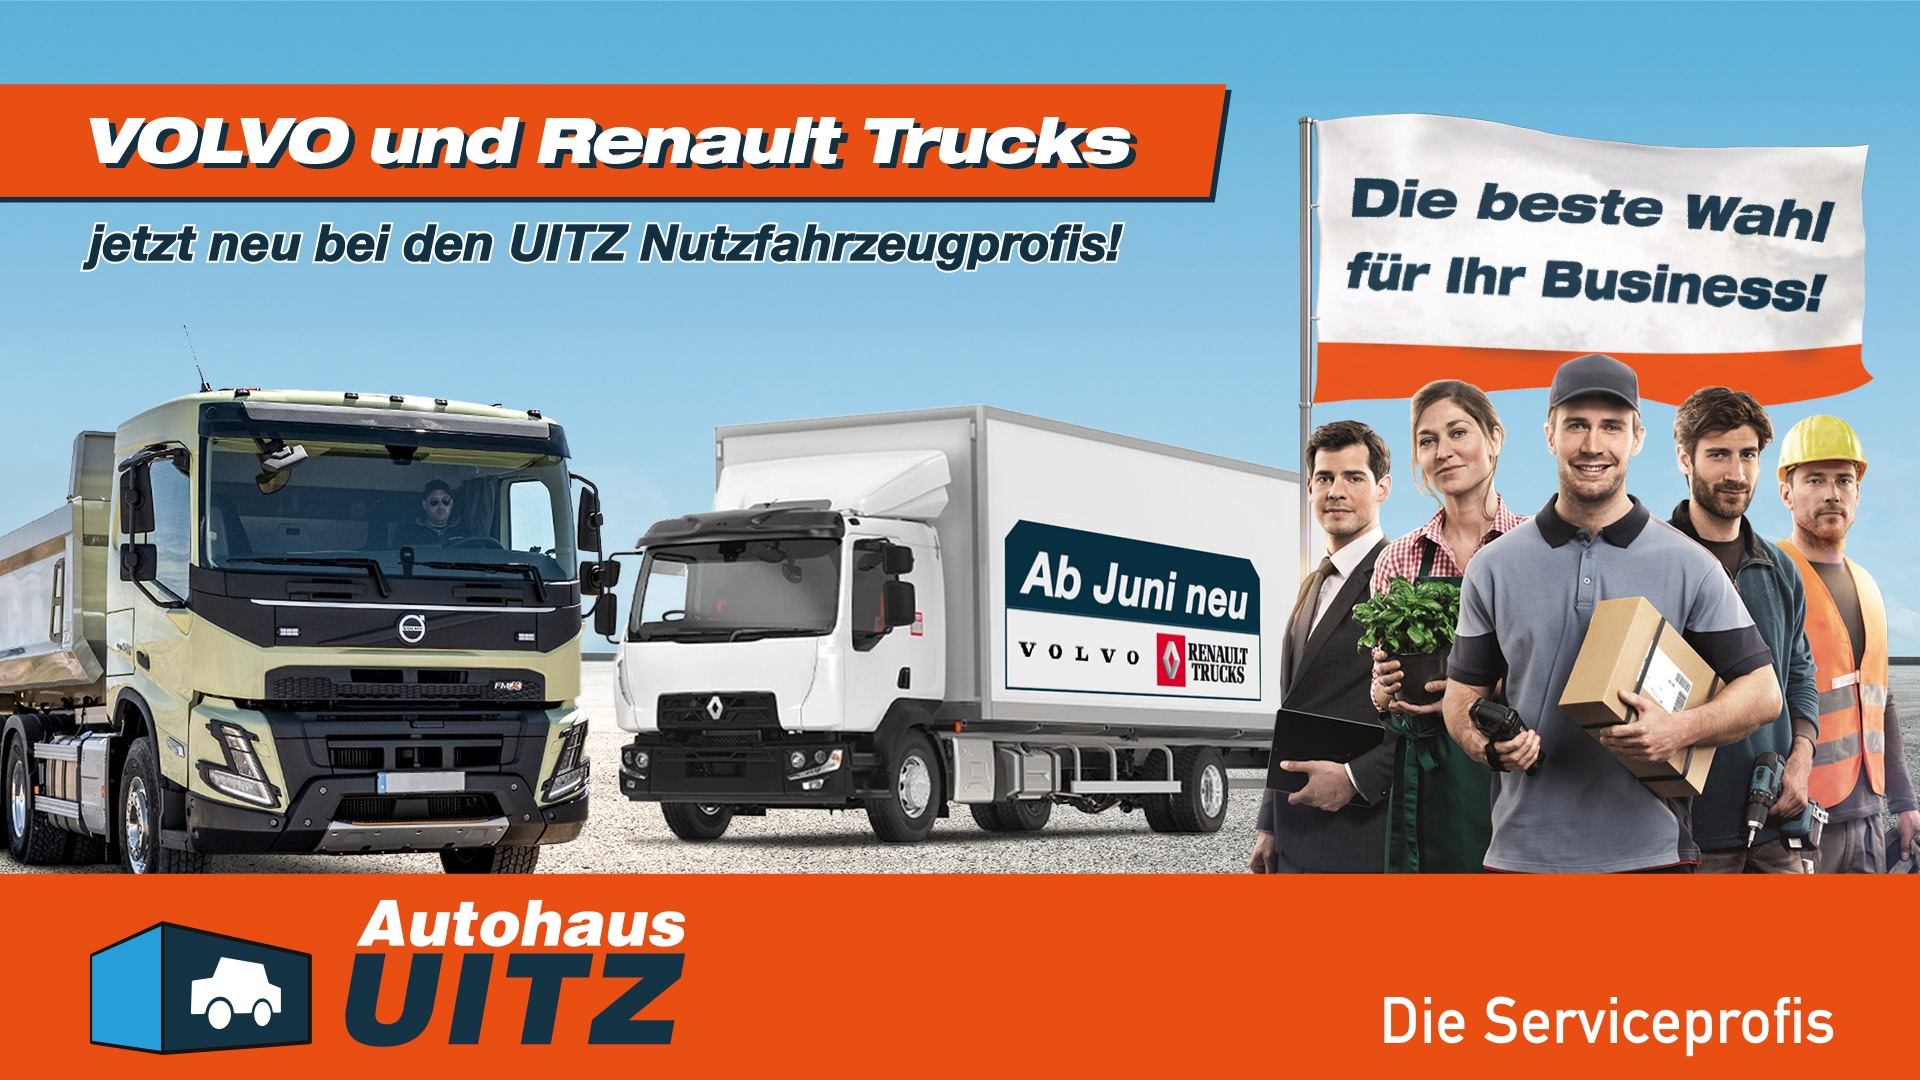 NEU bei UITZ: VOLVO und Renault Trucks